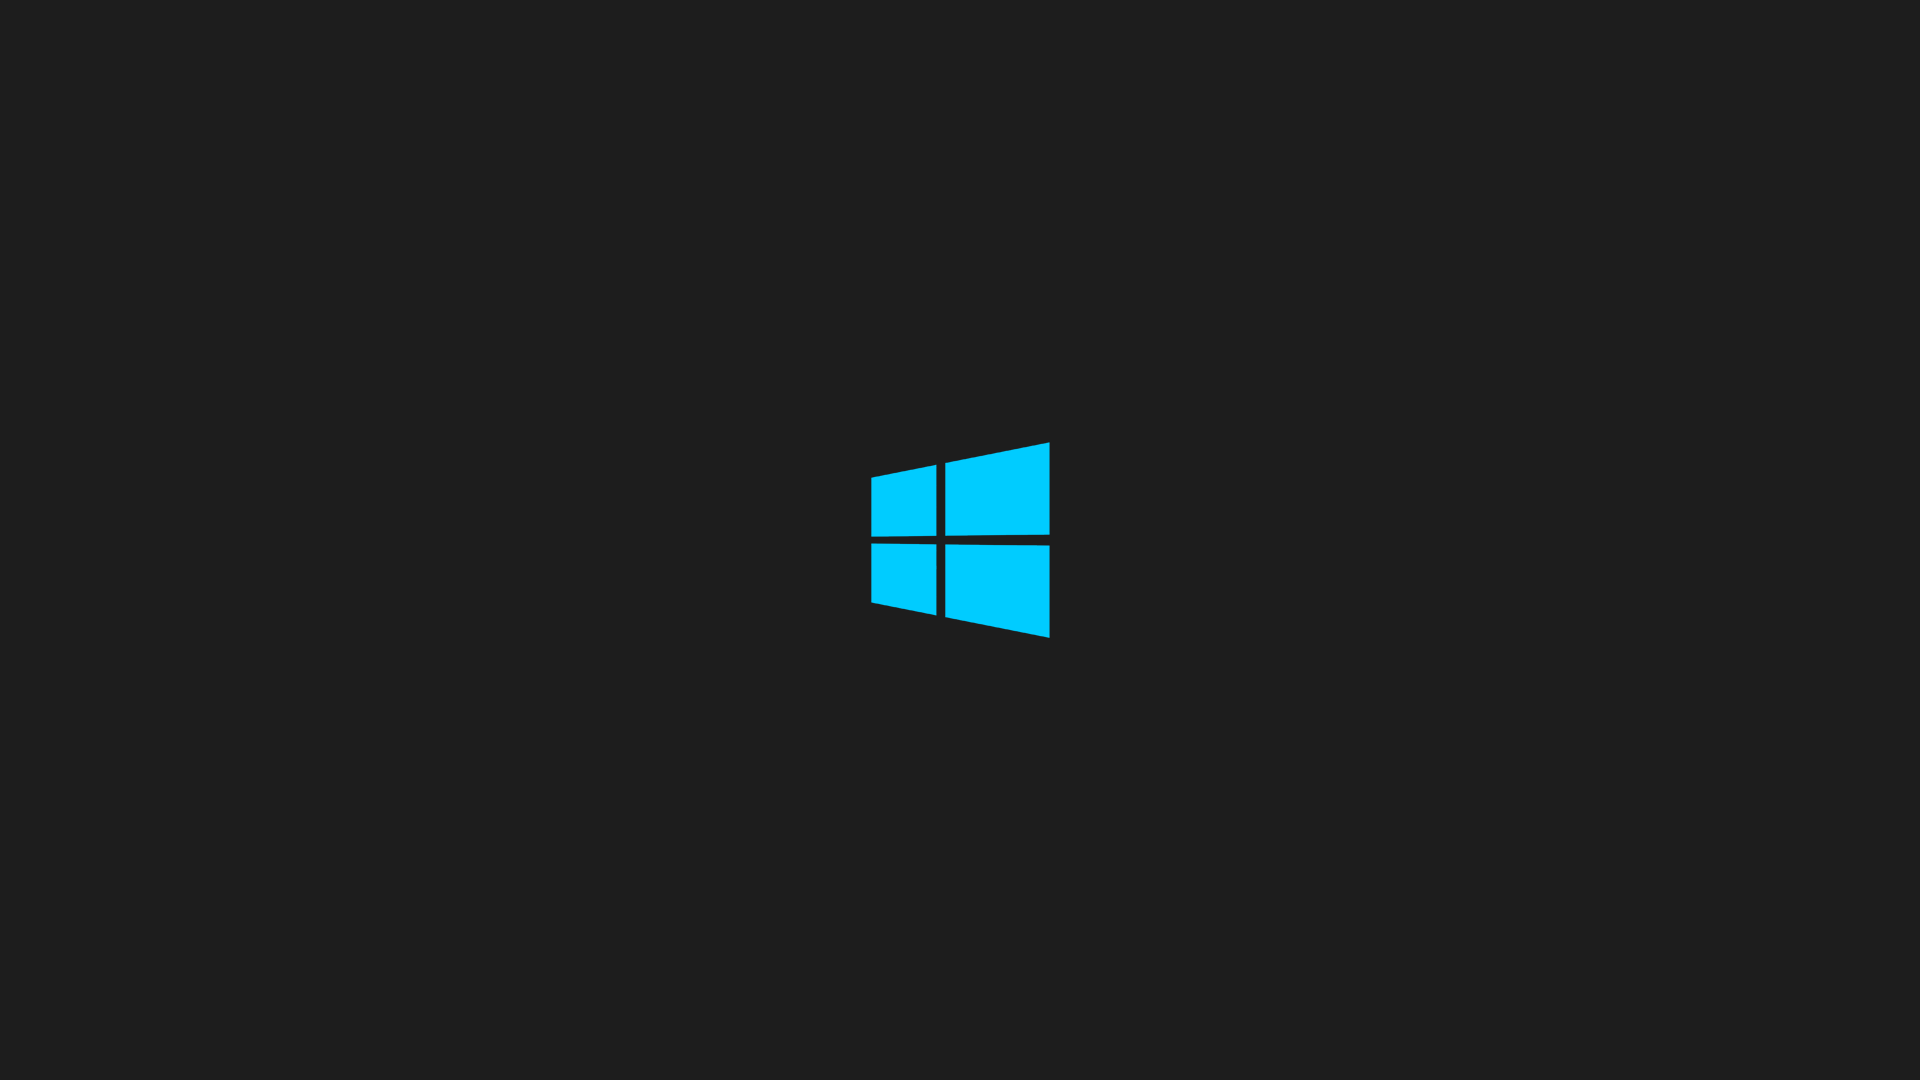 Windows 8 Computer Wallpapers Desktop Backgrounds 1920x1080 ID